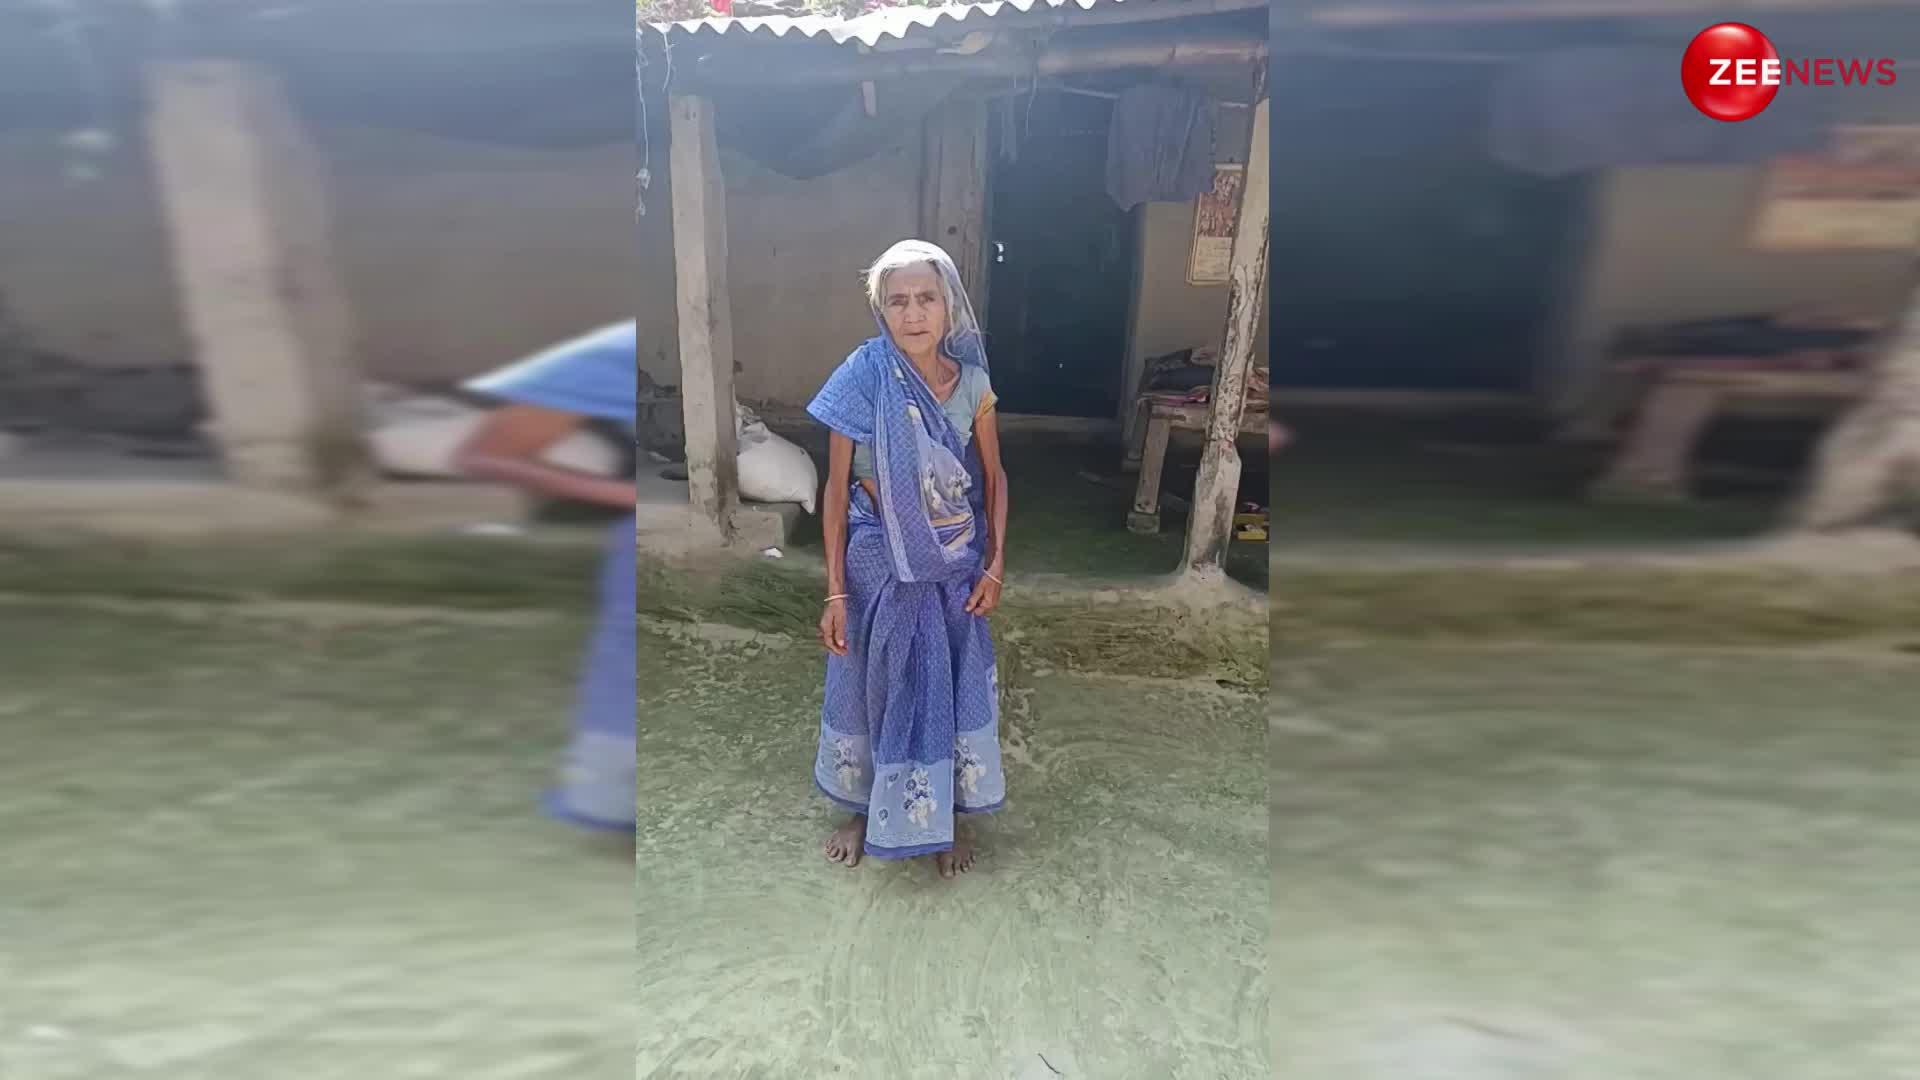 Viral Dadi dance: दादी ने साड़ी उठा-उठाकर लगाए ऐसे ठुमके, देख दादा को भी चढ़ गई जवानी